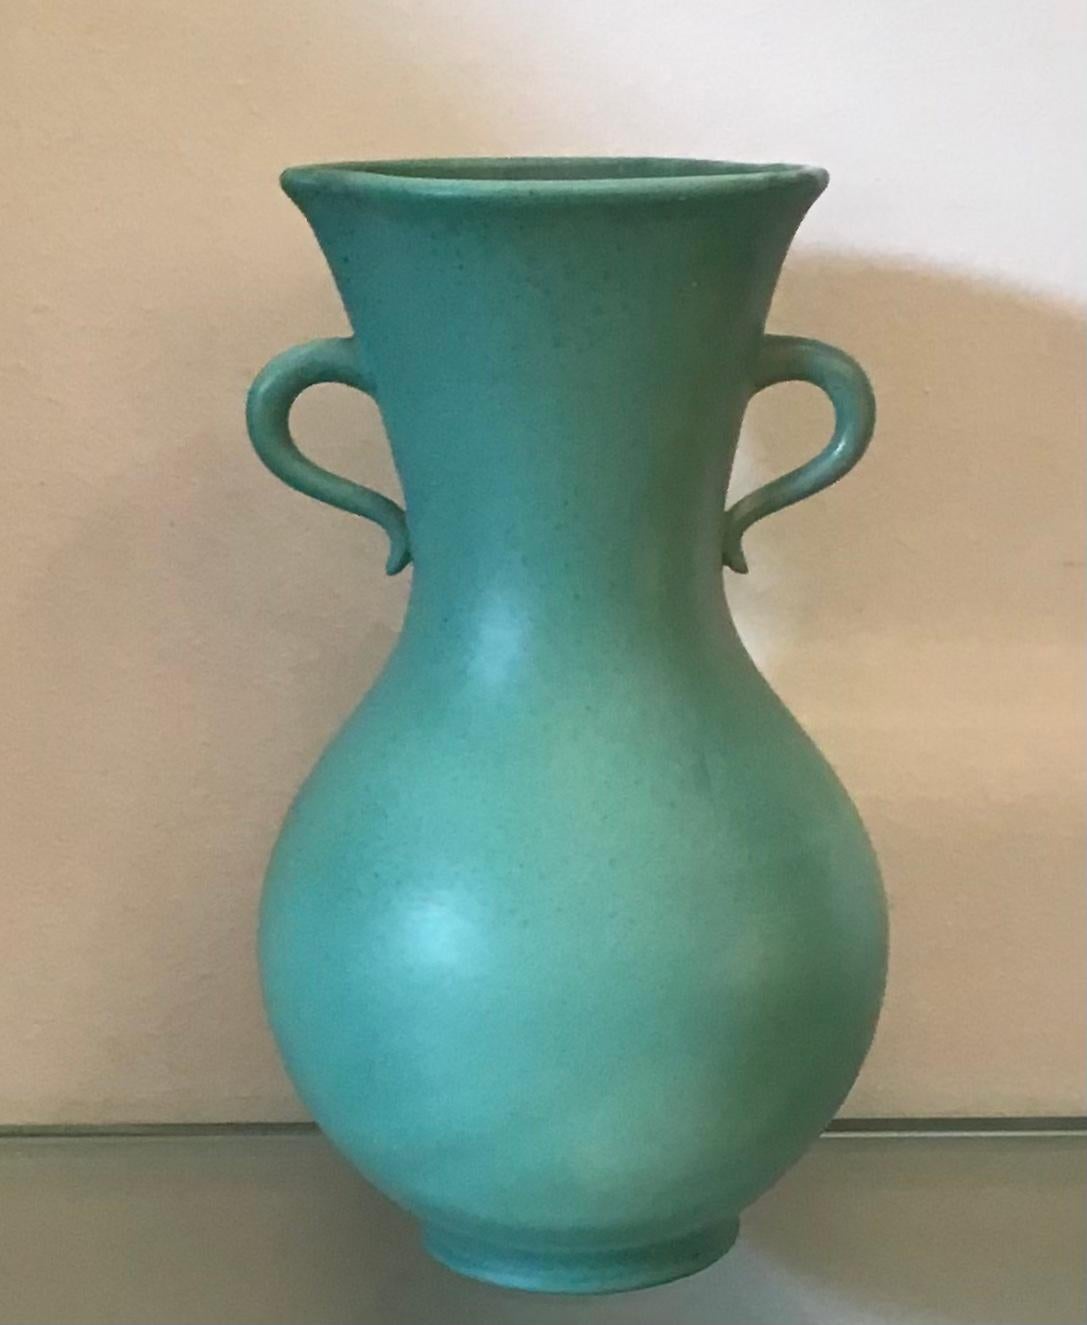 Richard Ginori Giovanni Gariboldi vase ceramic 1950 Italy.